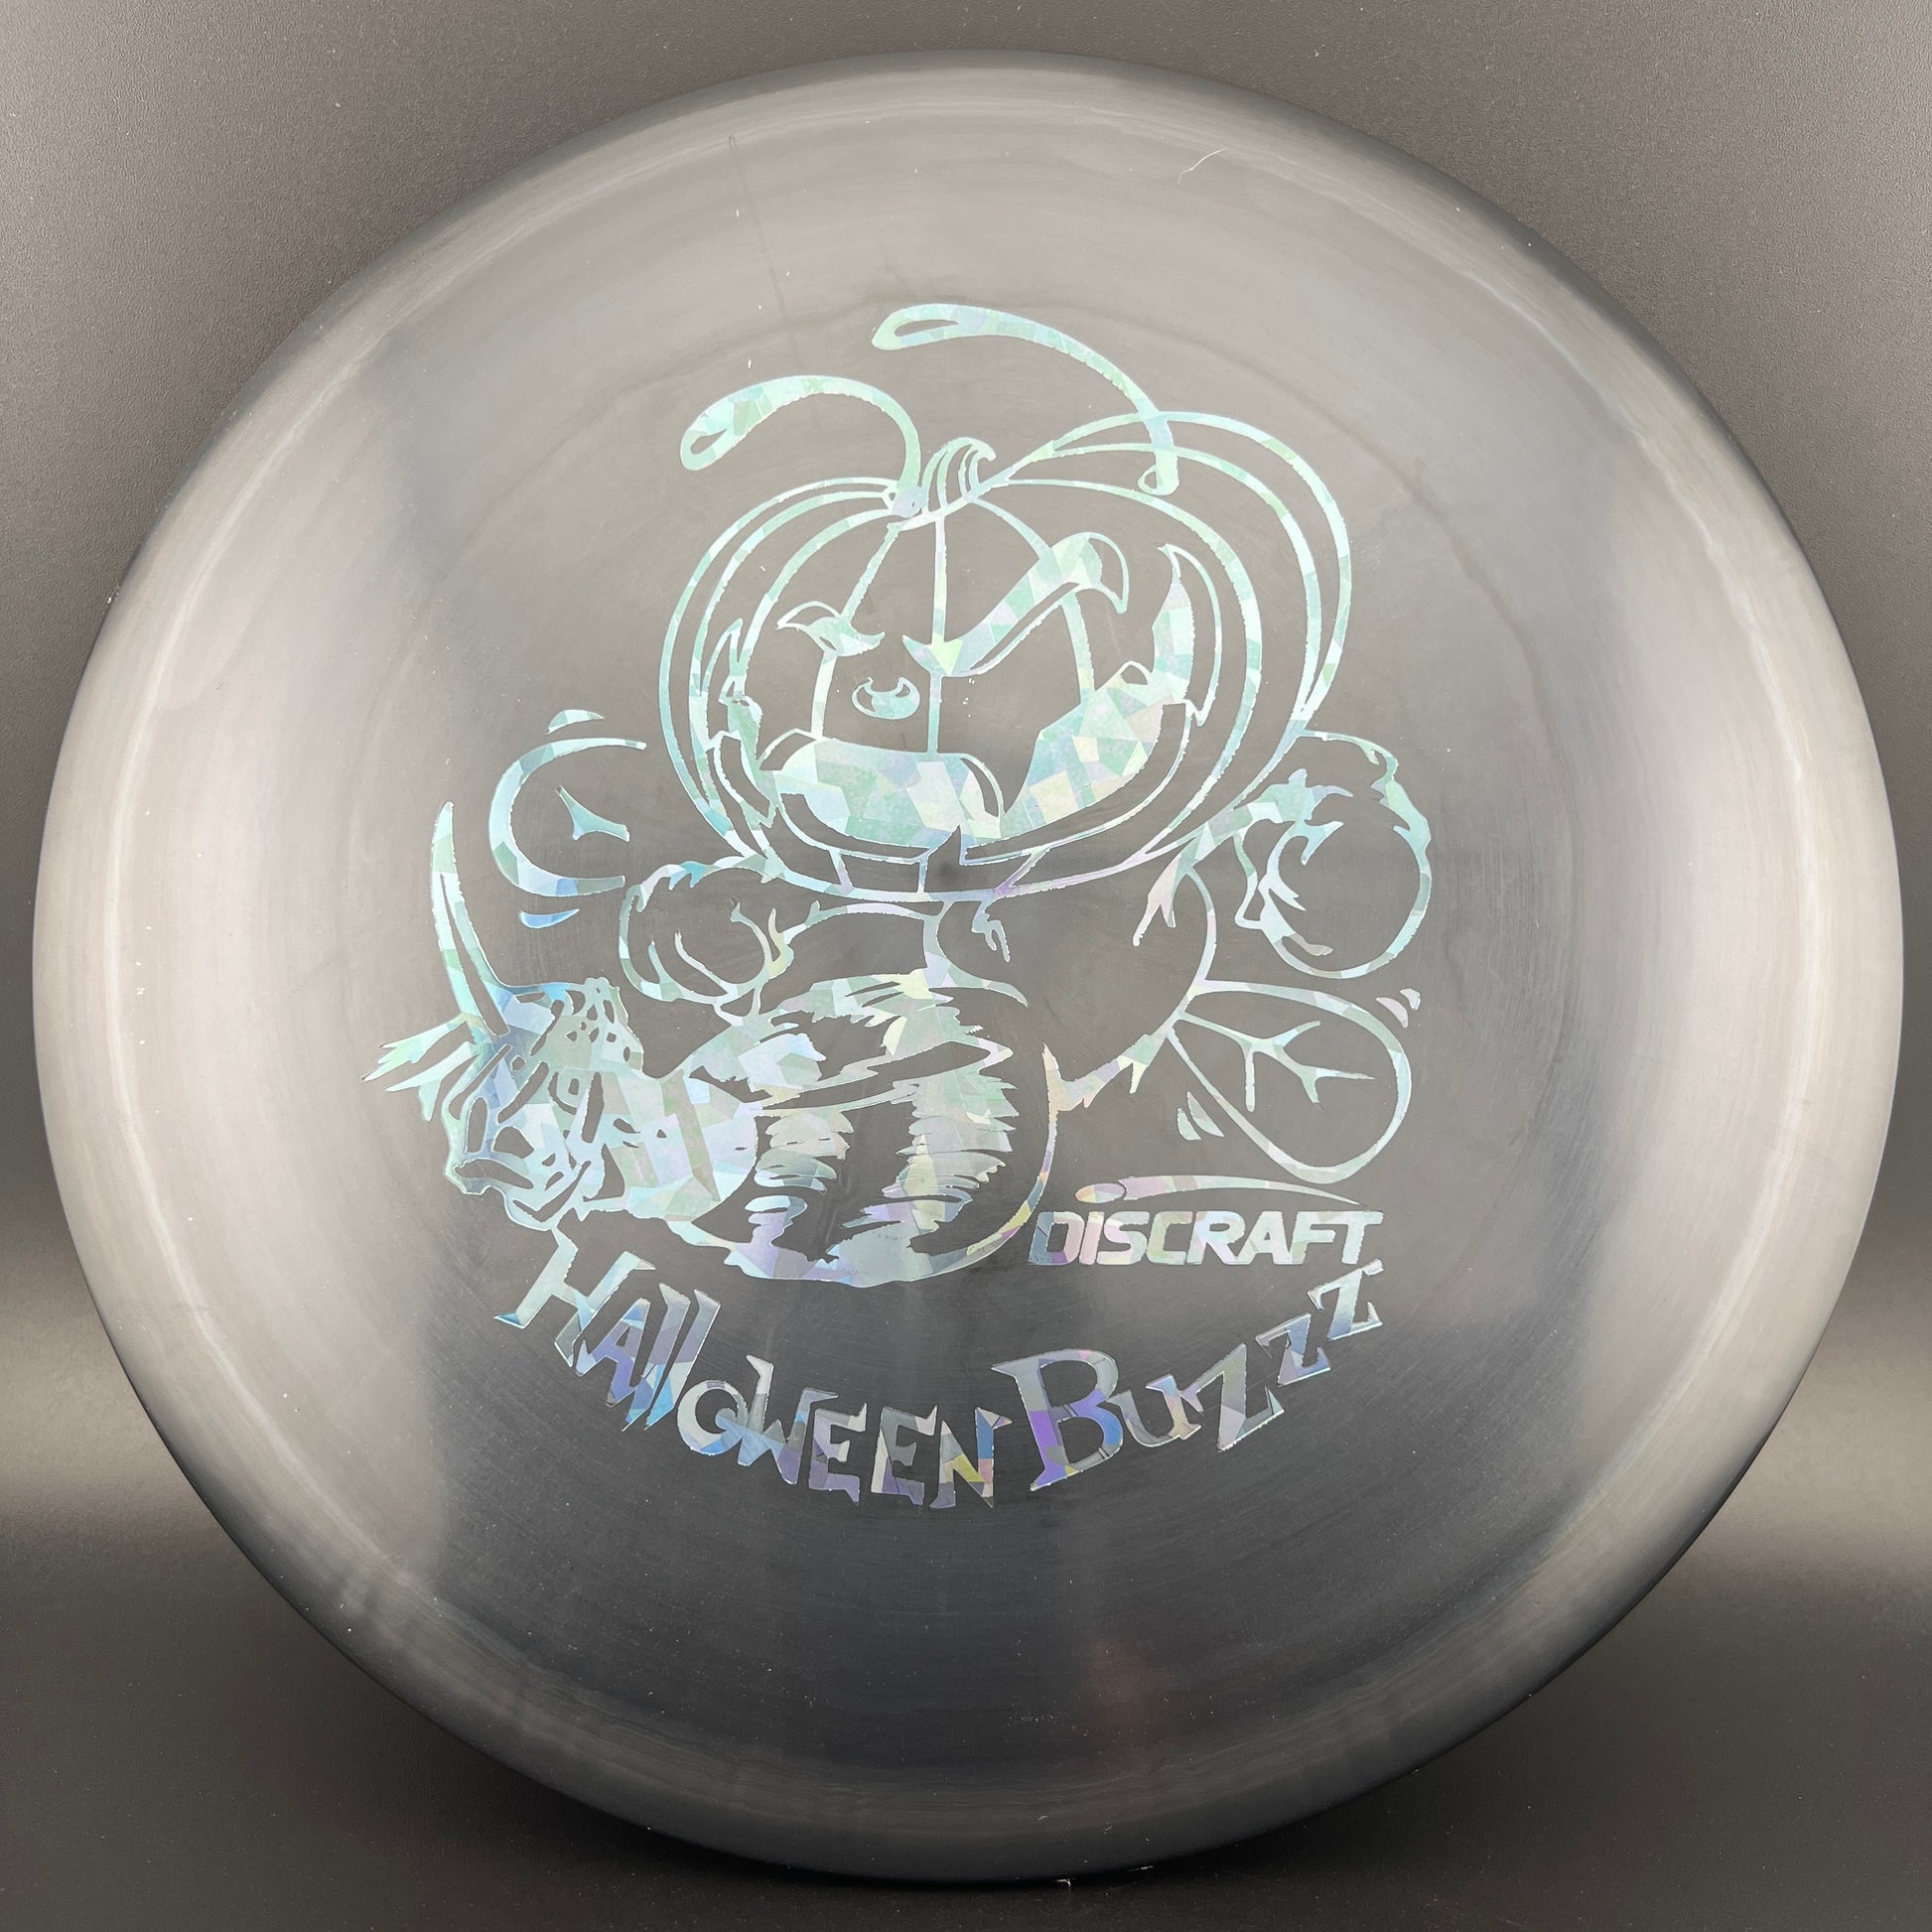 Midnight Pumpkin Head Buzzz - Limited Halloween Release 1/500 Discraft